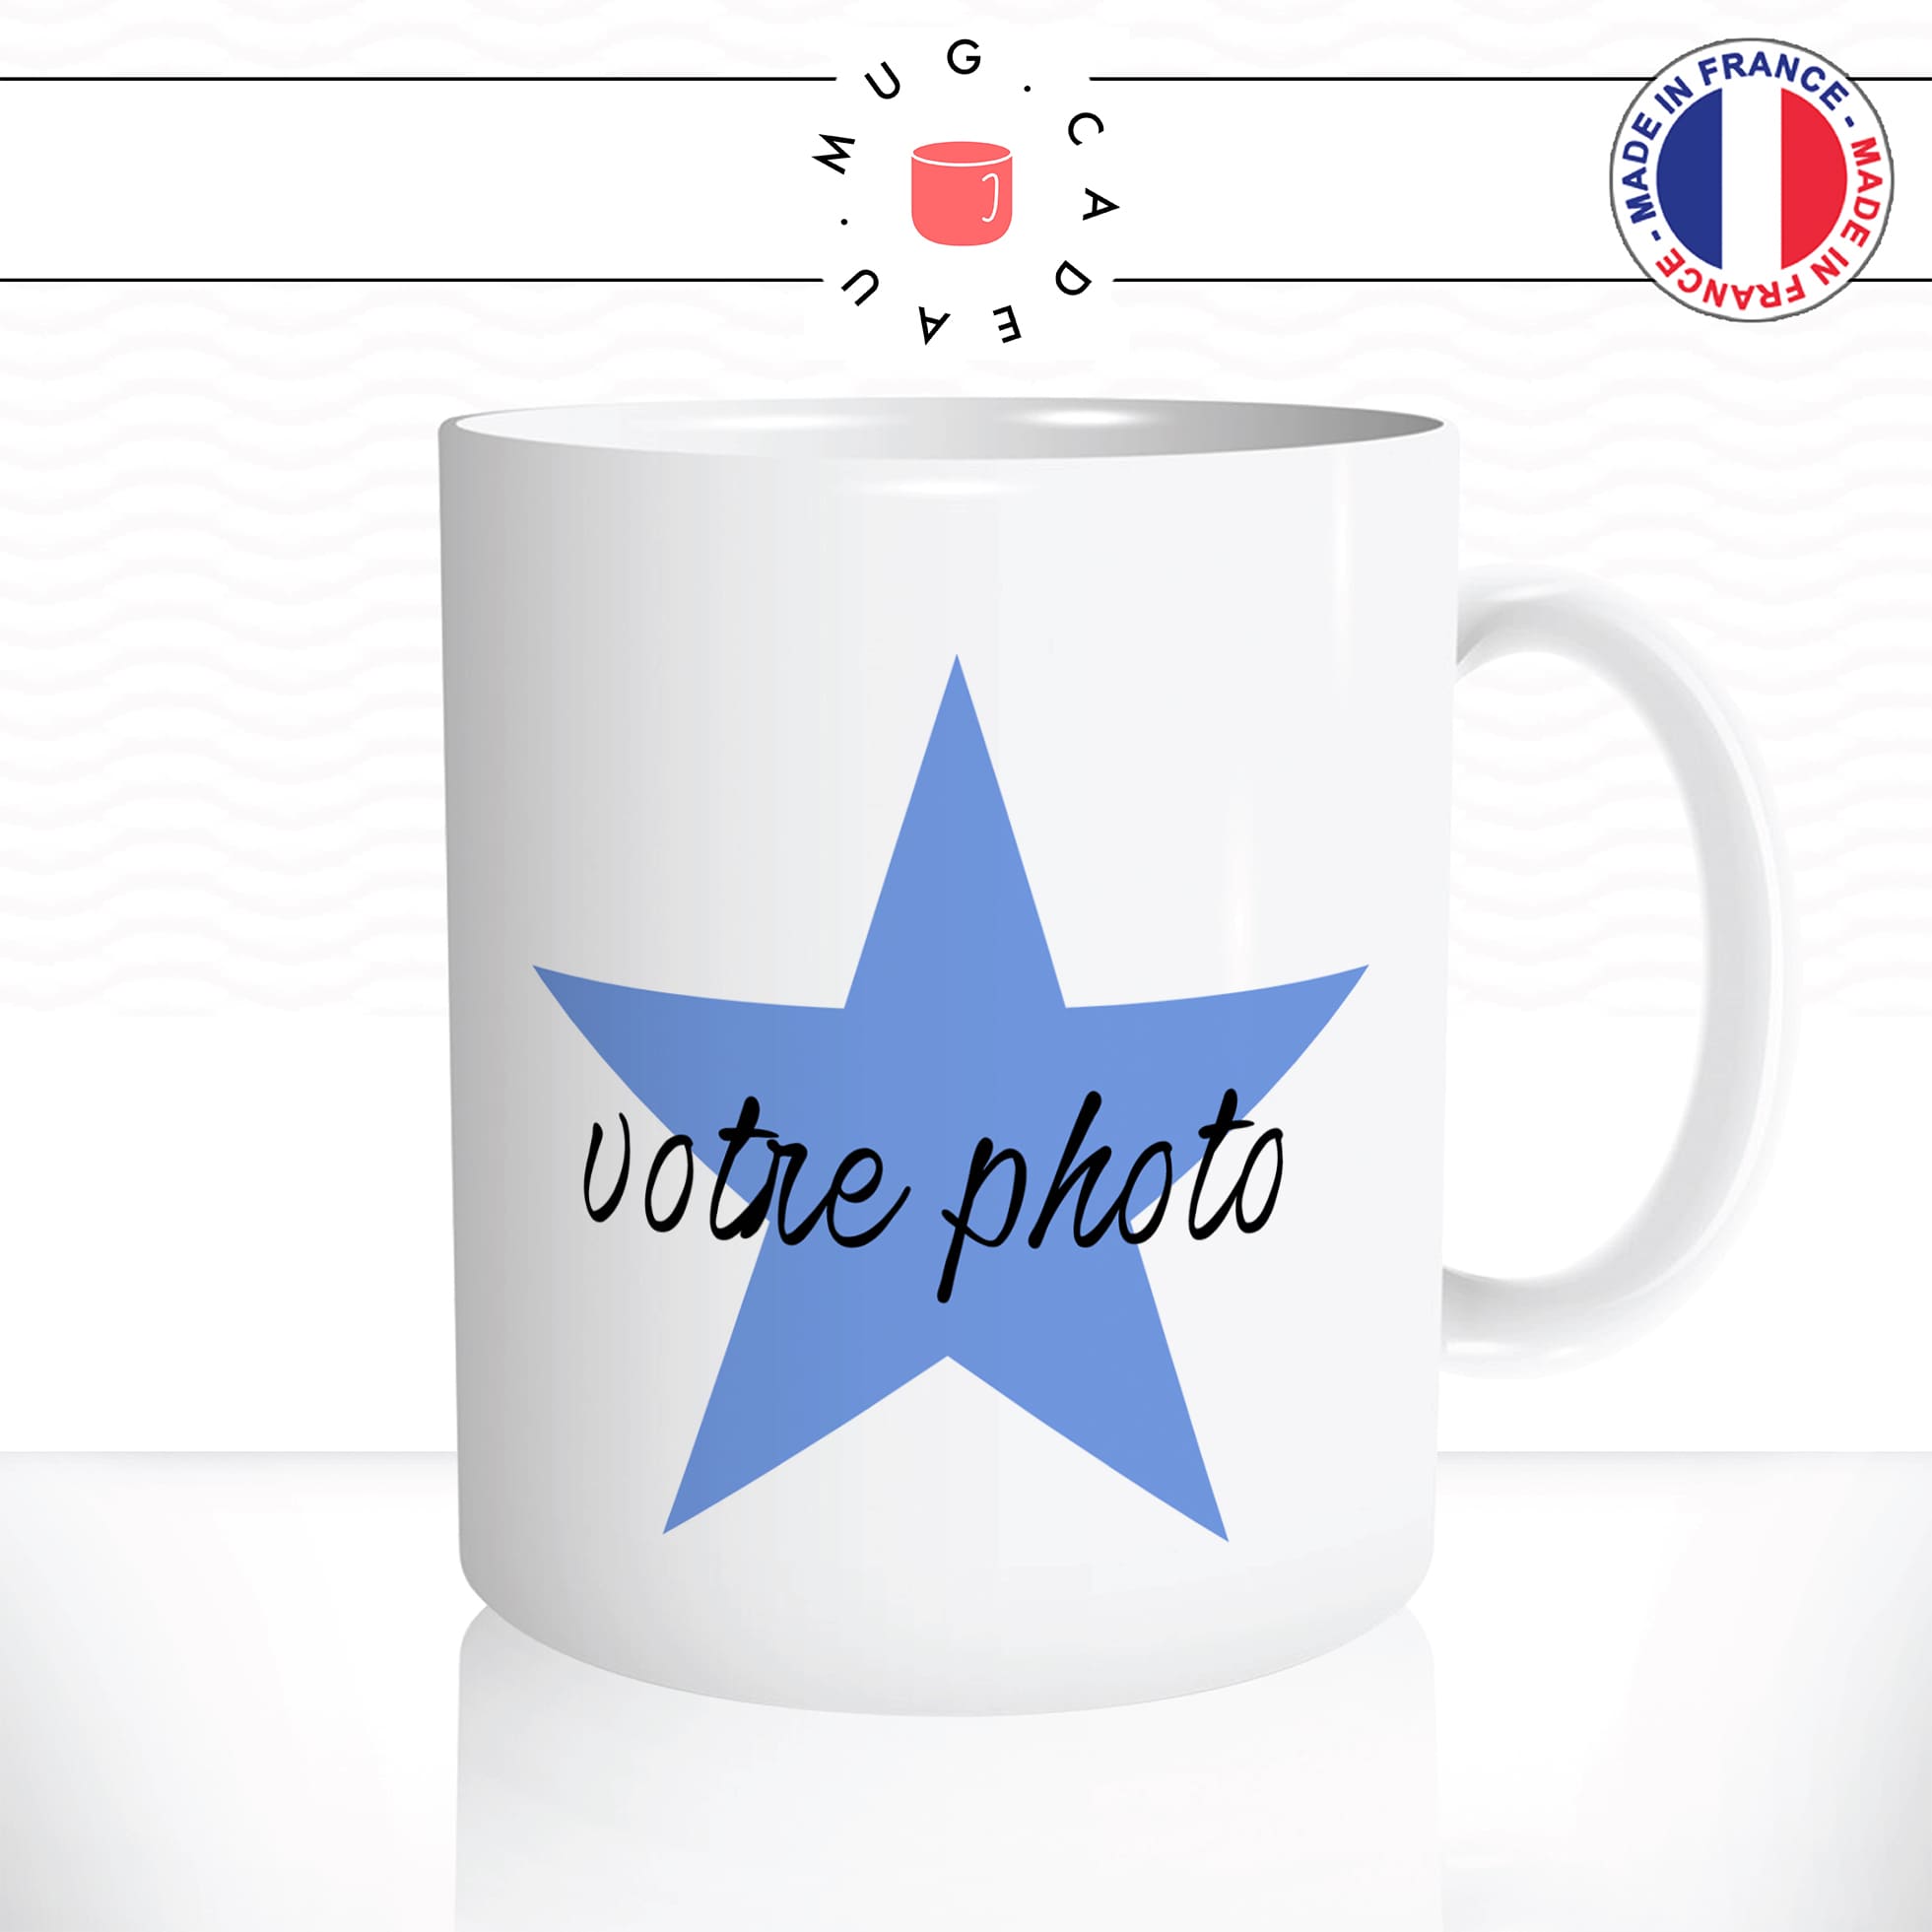 mug-tasse-blanche-the-office-parodie-michael-scott-votre-photo-etoile-personnalisable-fun-drole-original-unique-tete-idée-cadeau-homme-femme2